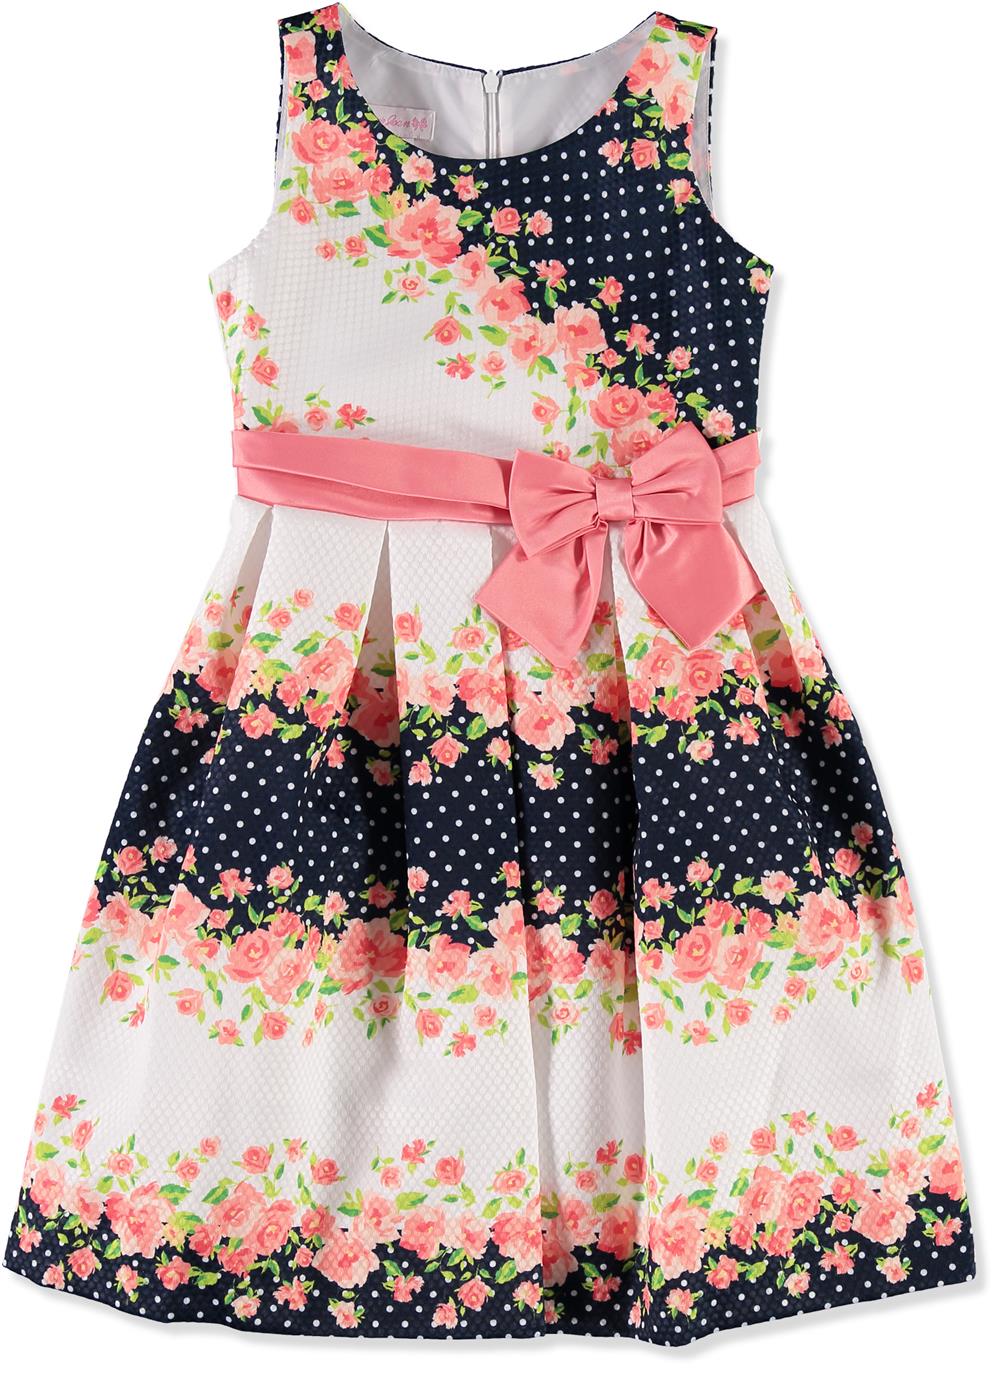 Bonnie Jean Girls 7-16 Floral Pique Dress